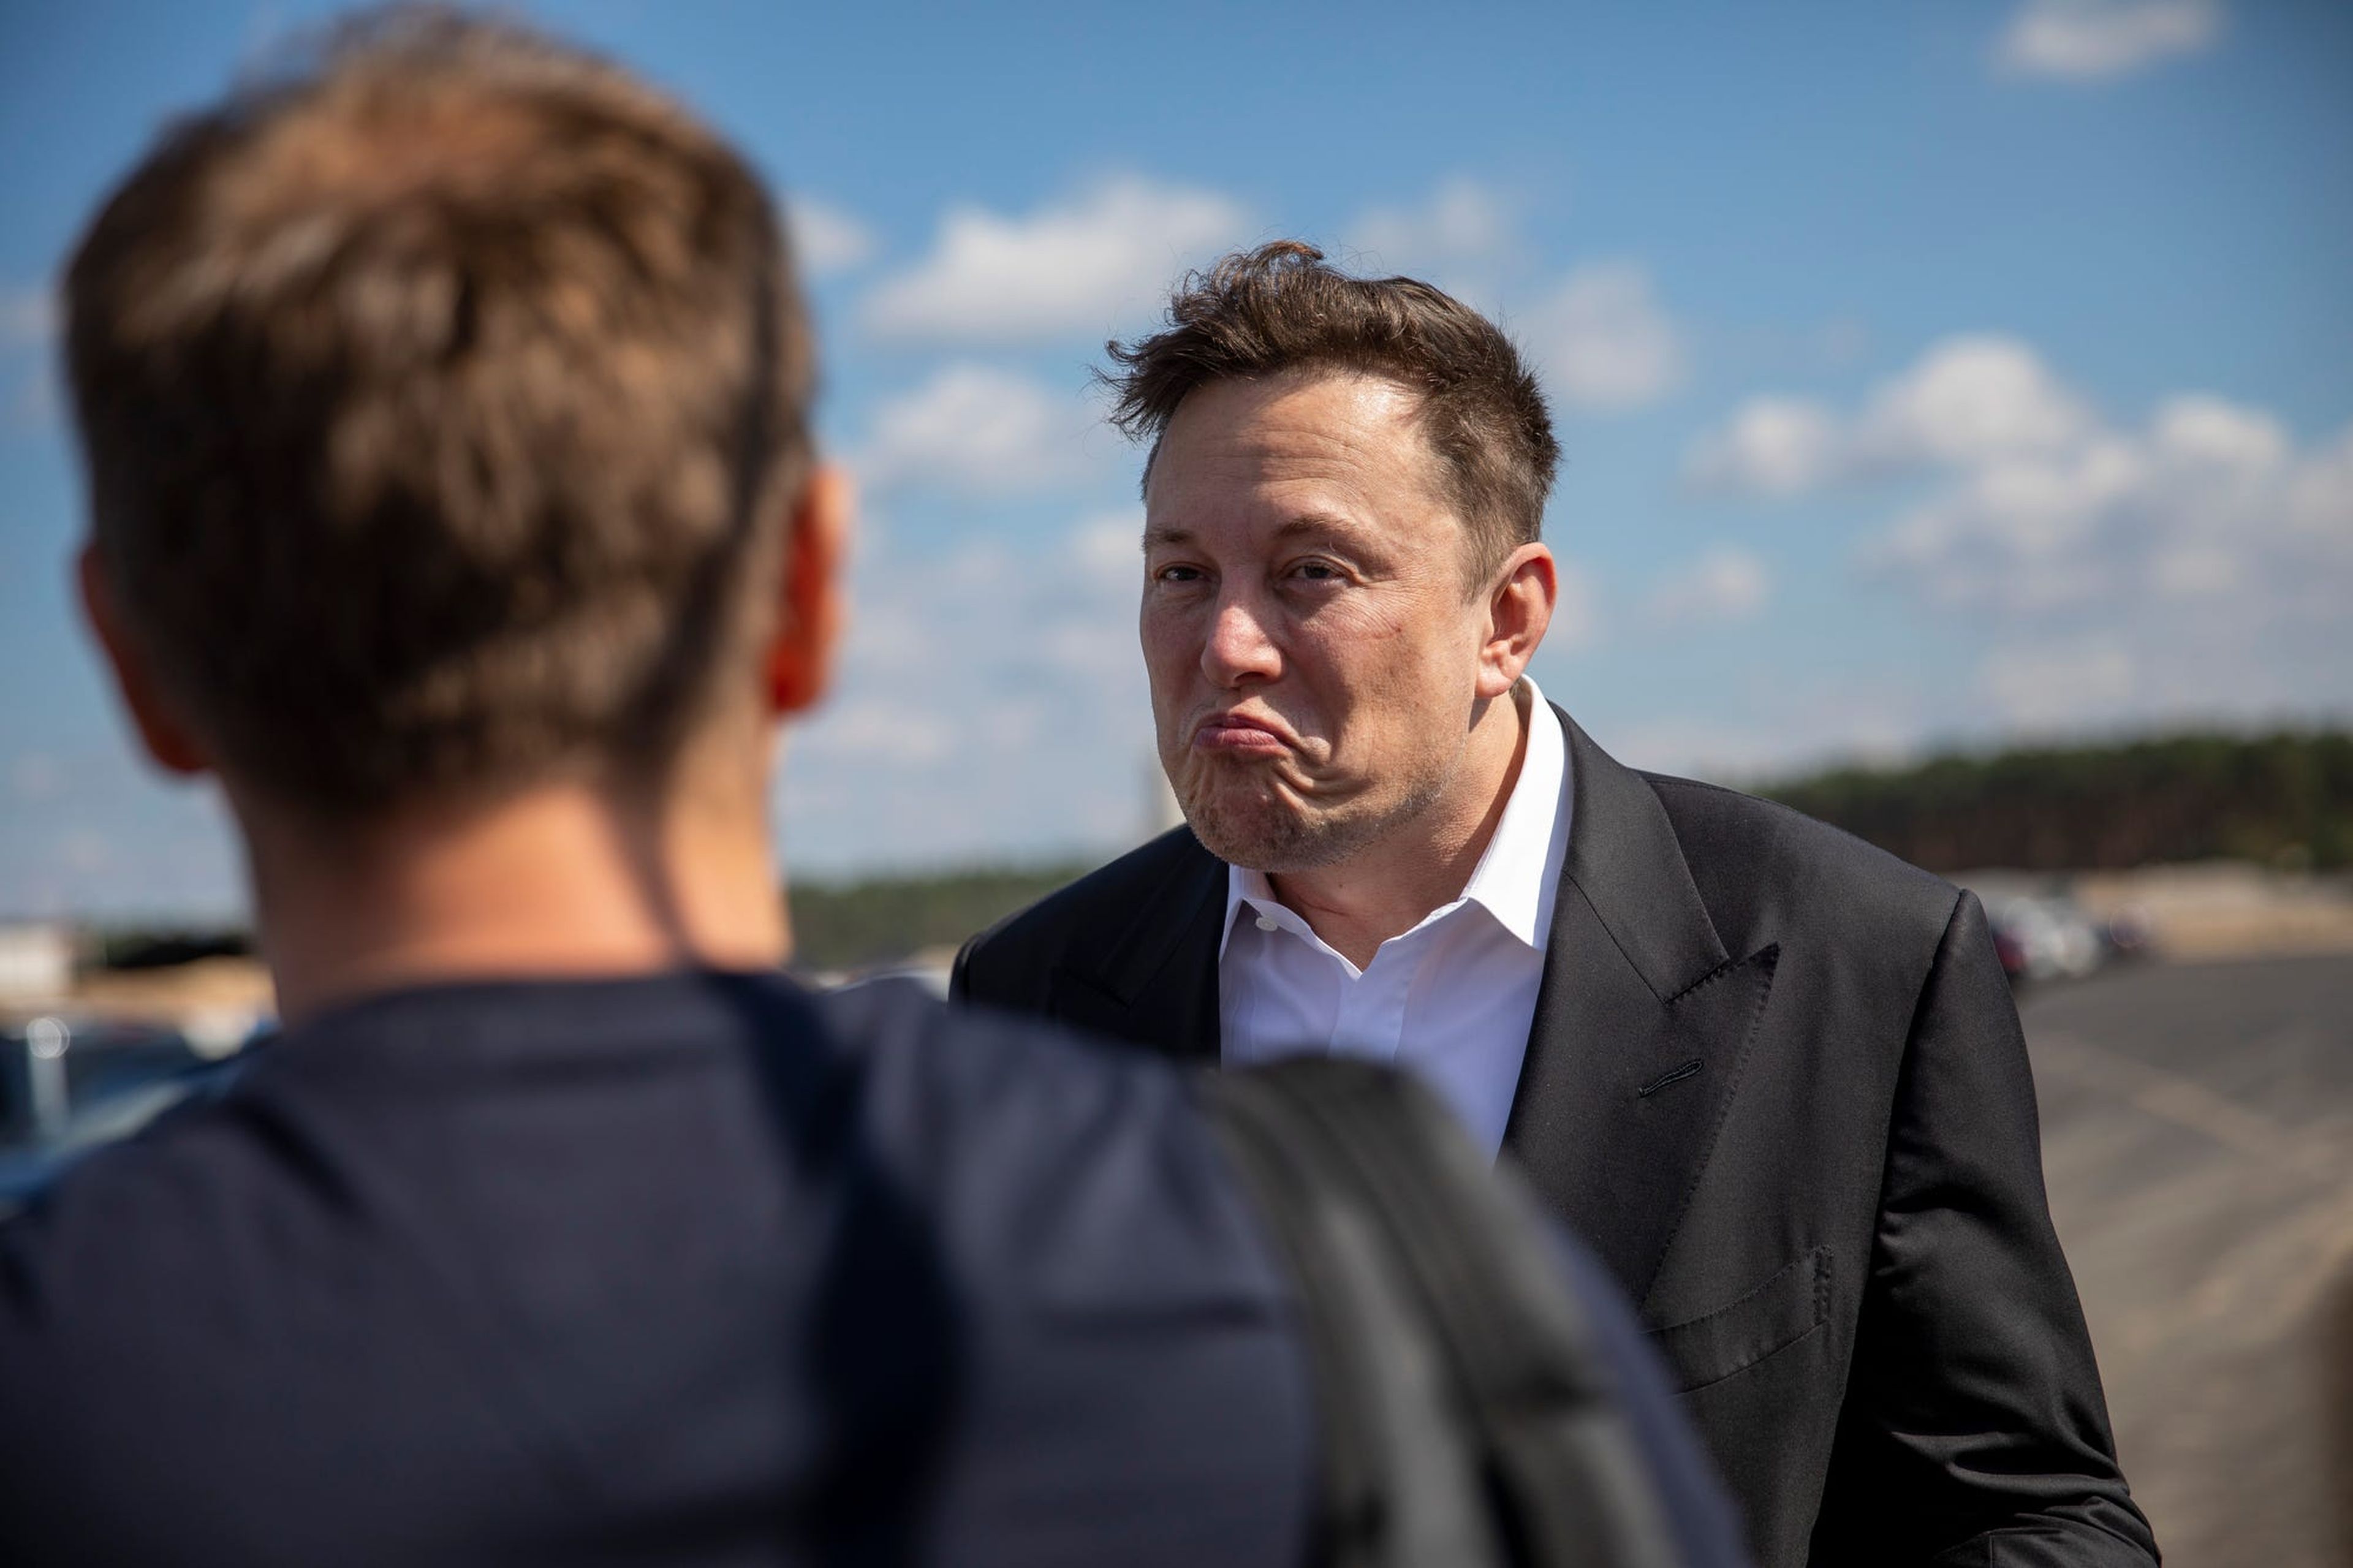 El director de Tesla, Elon Musk, habla con un visitante cuando llega para echar un vistazo al sitio de construcción de la nueva Gigafábrica de Tesla cerca de Berlín el 3 de septiembre de 2020 cerca de Gruenheide, Alemania.